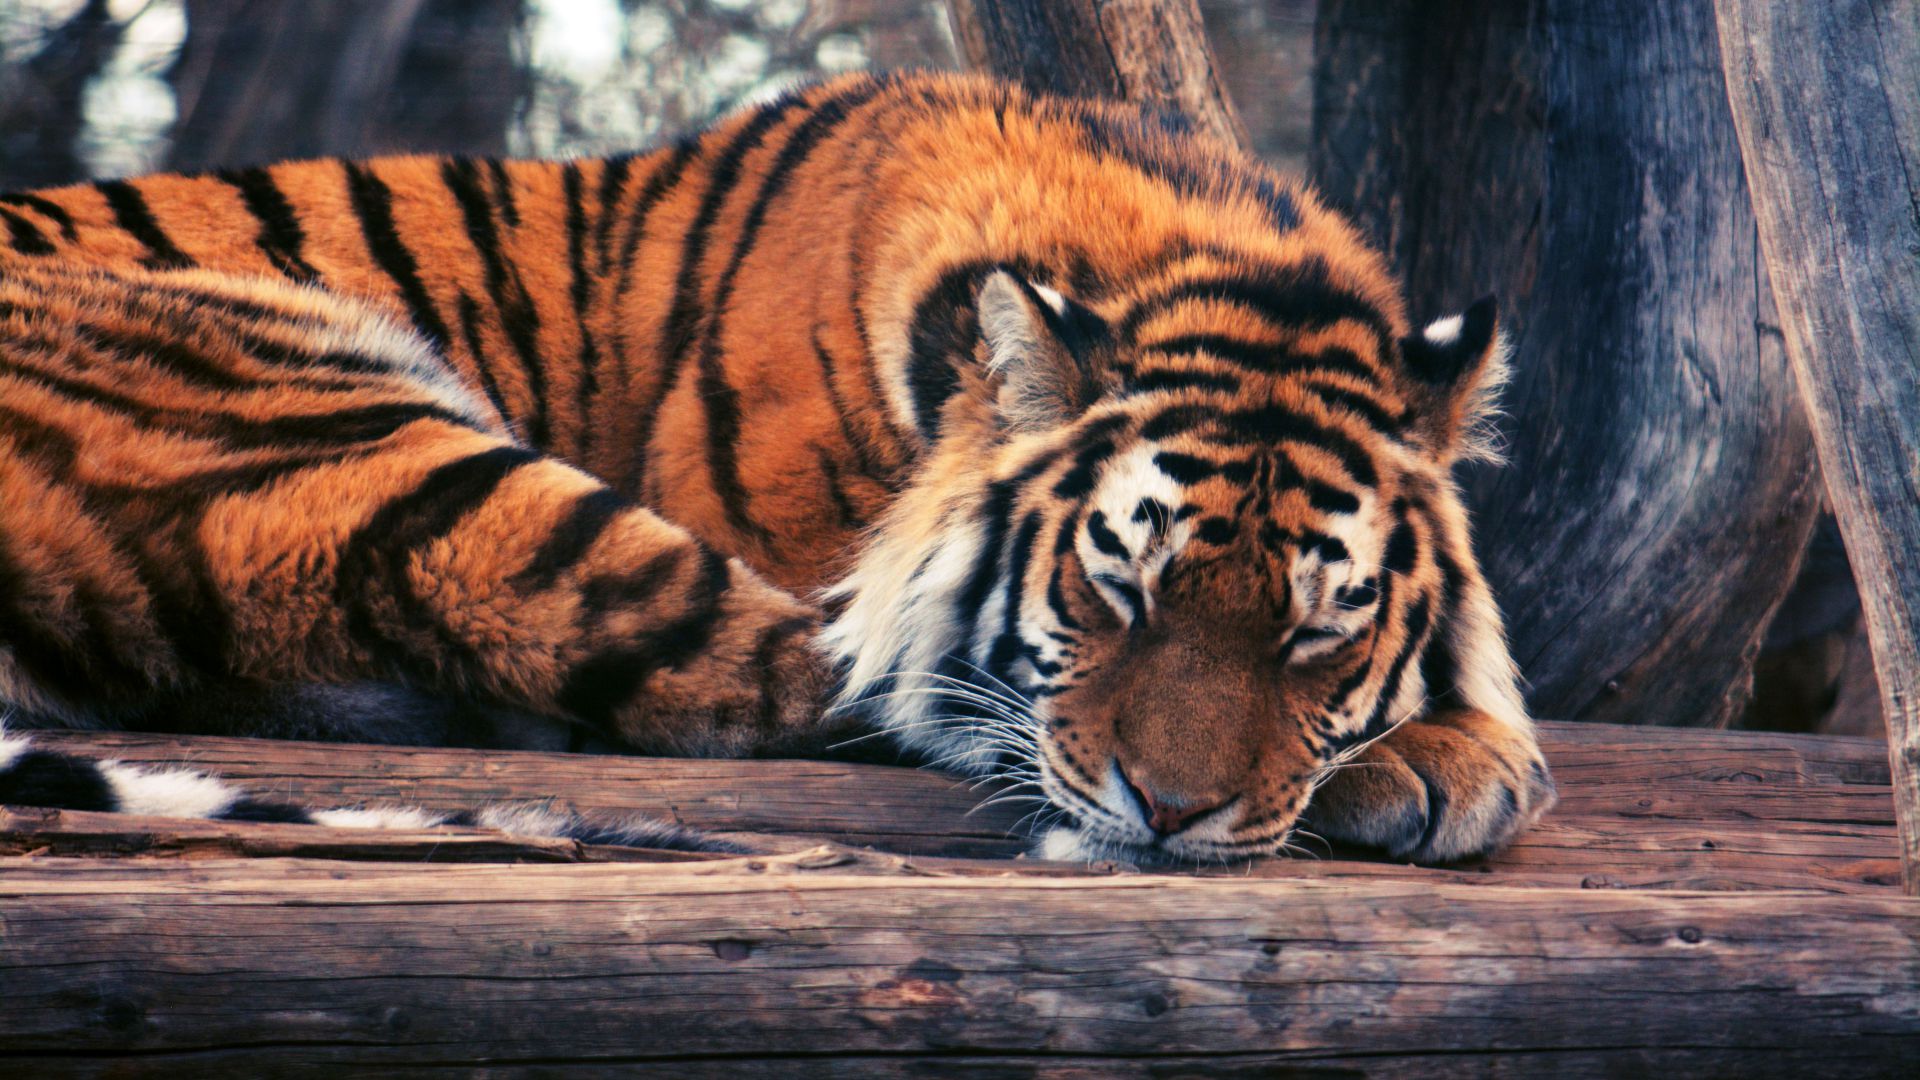 Тигр, милые животные, забавный, Tiger, cute animals, funny (horizontal)